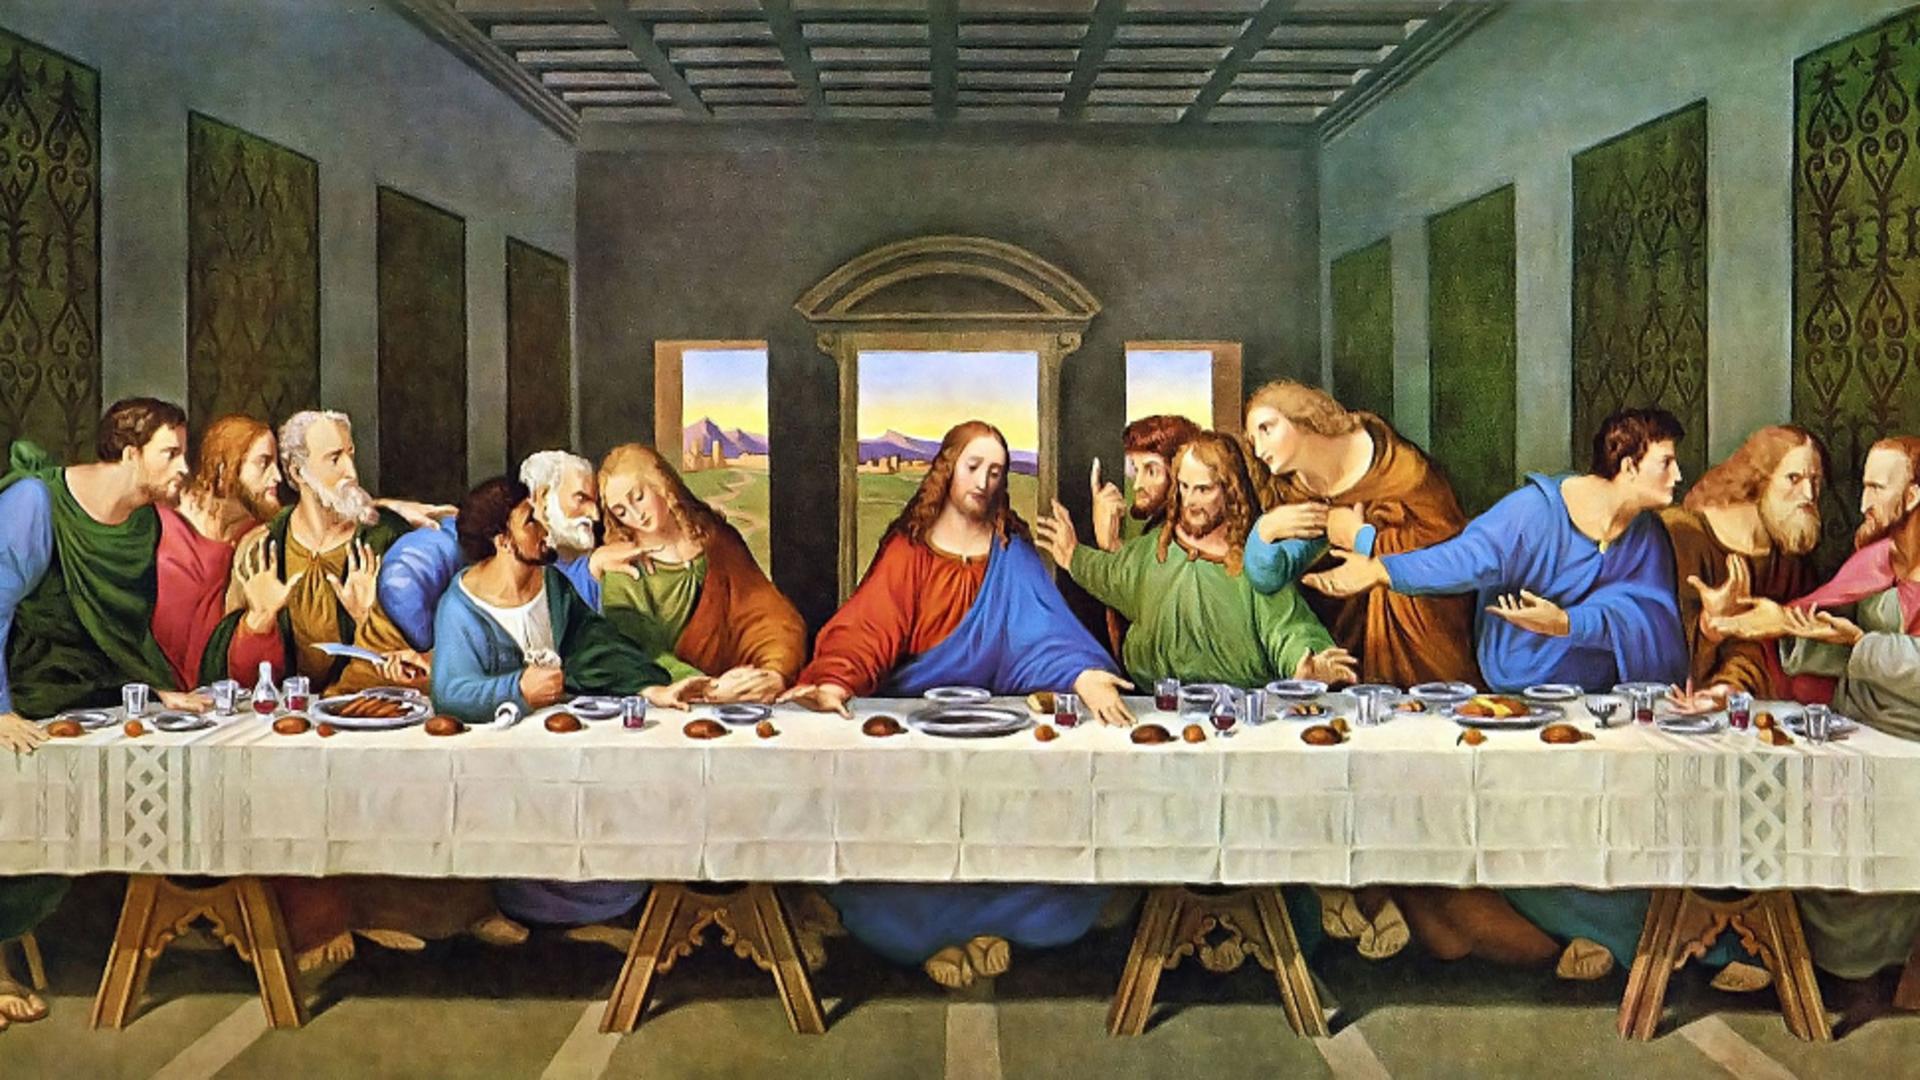 Hrana lui Iisus Hristos. Ce mânca Mântuitorul, conform mărturiilor din Biblie